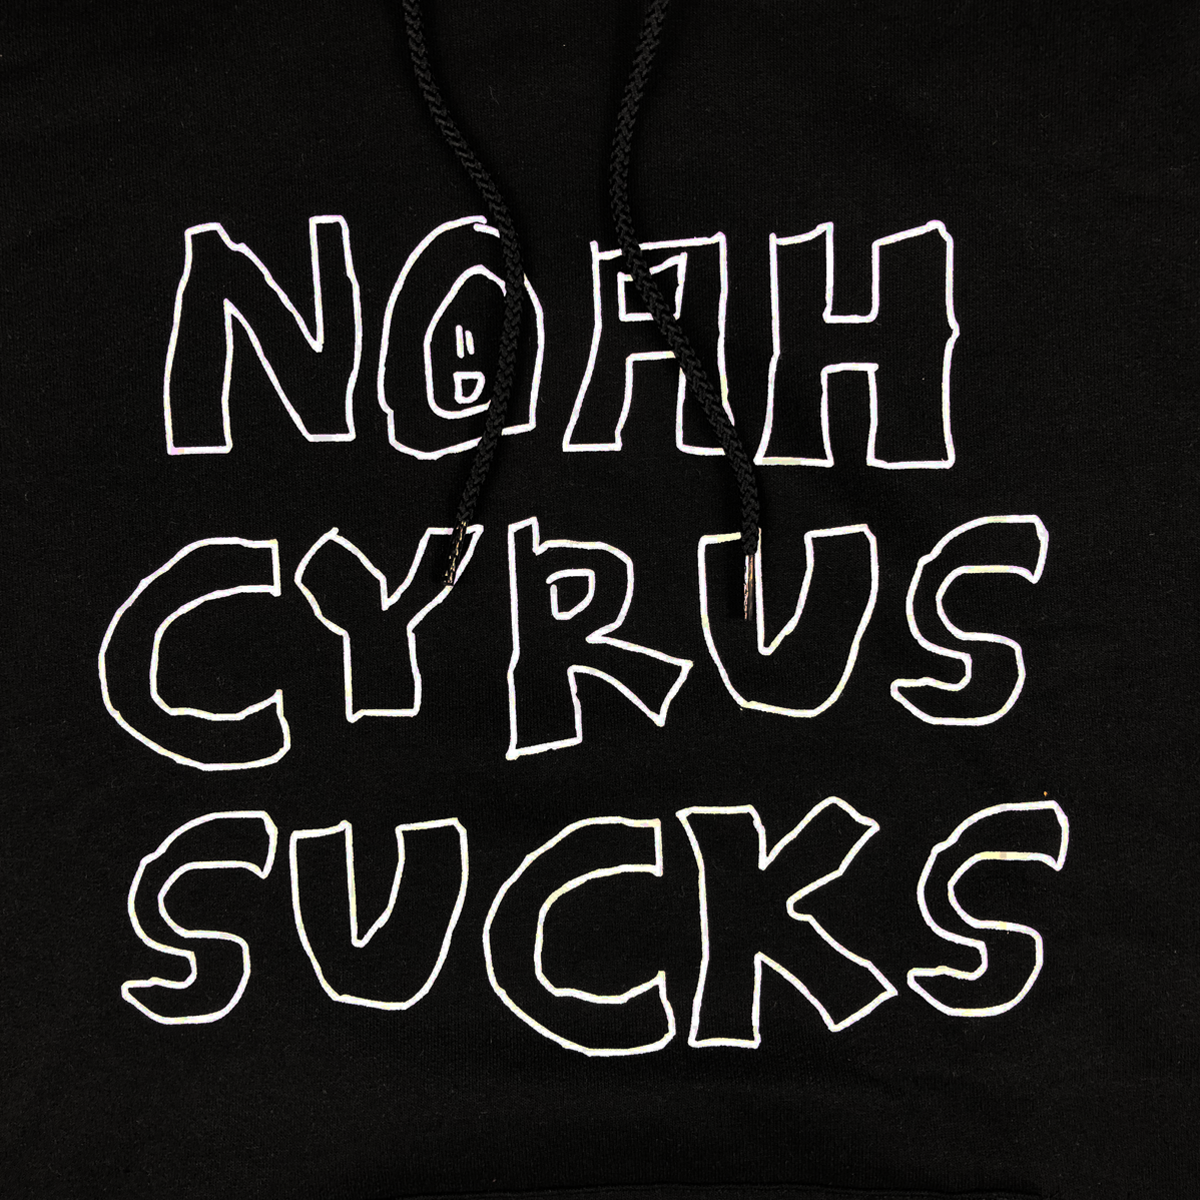 Noah Cyrus Sucks Hoodie